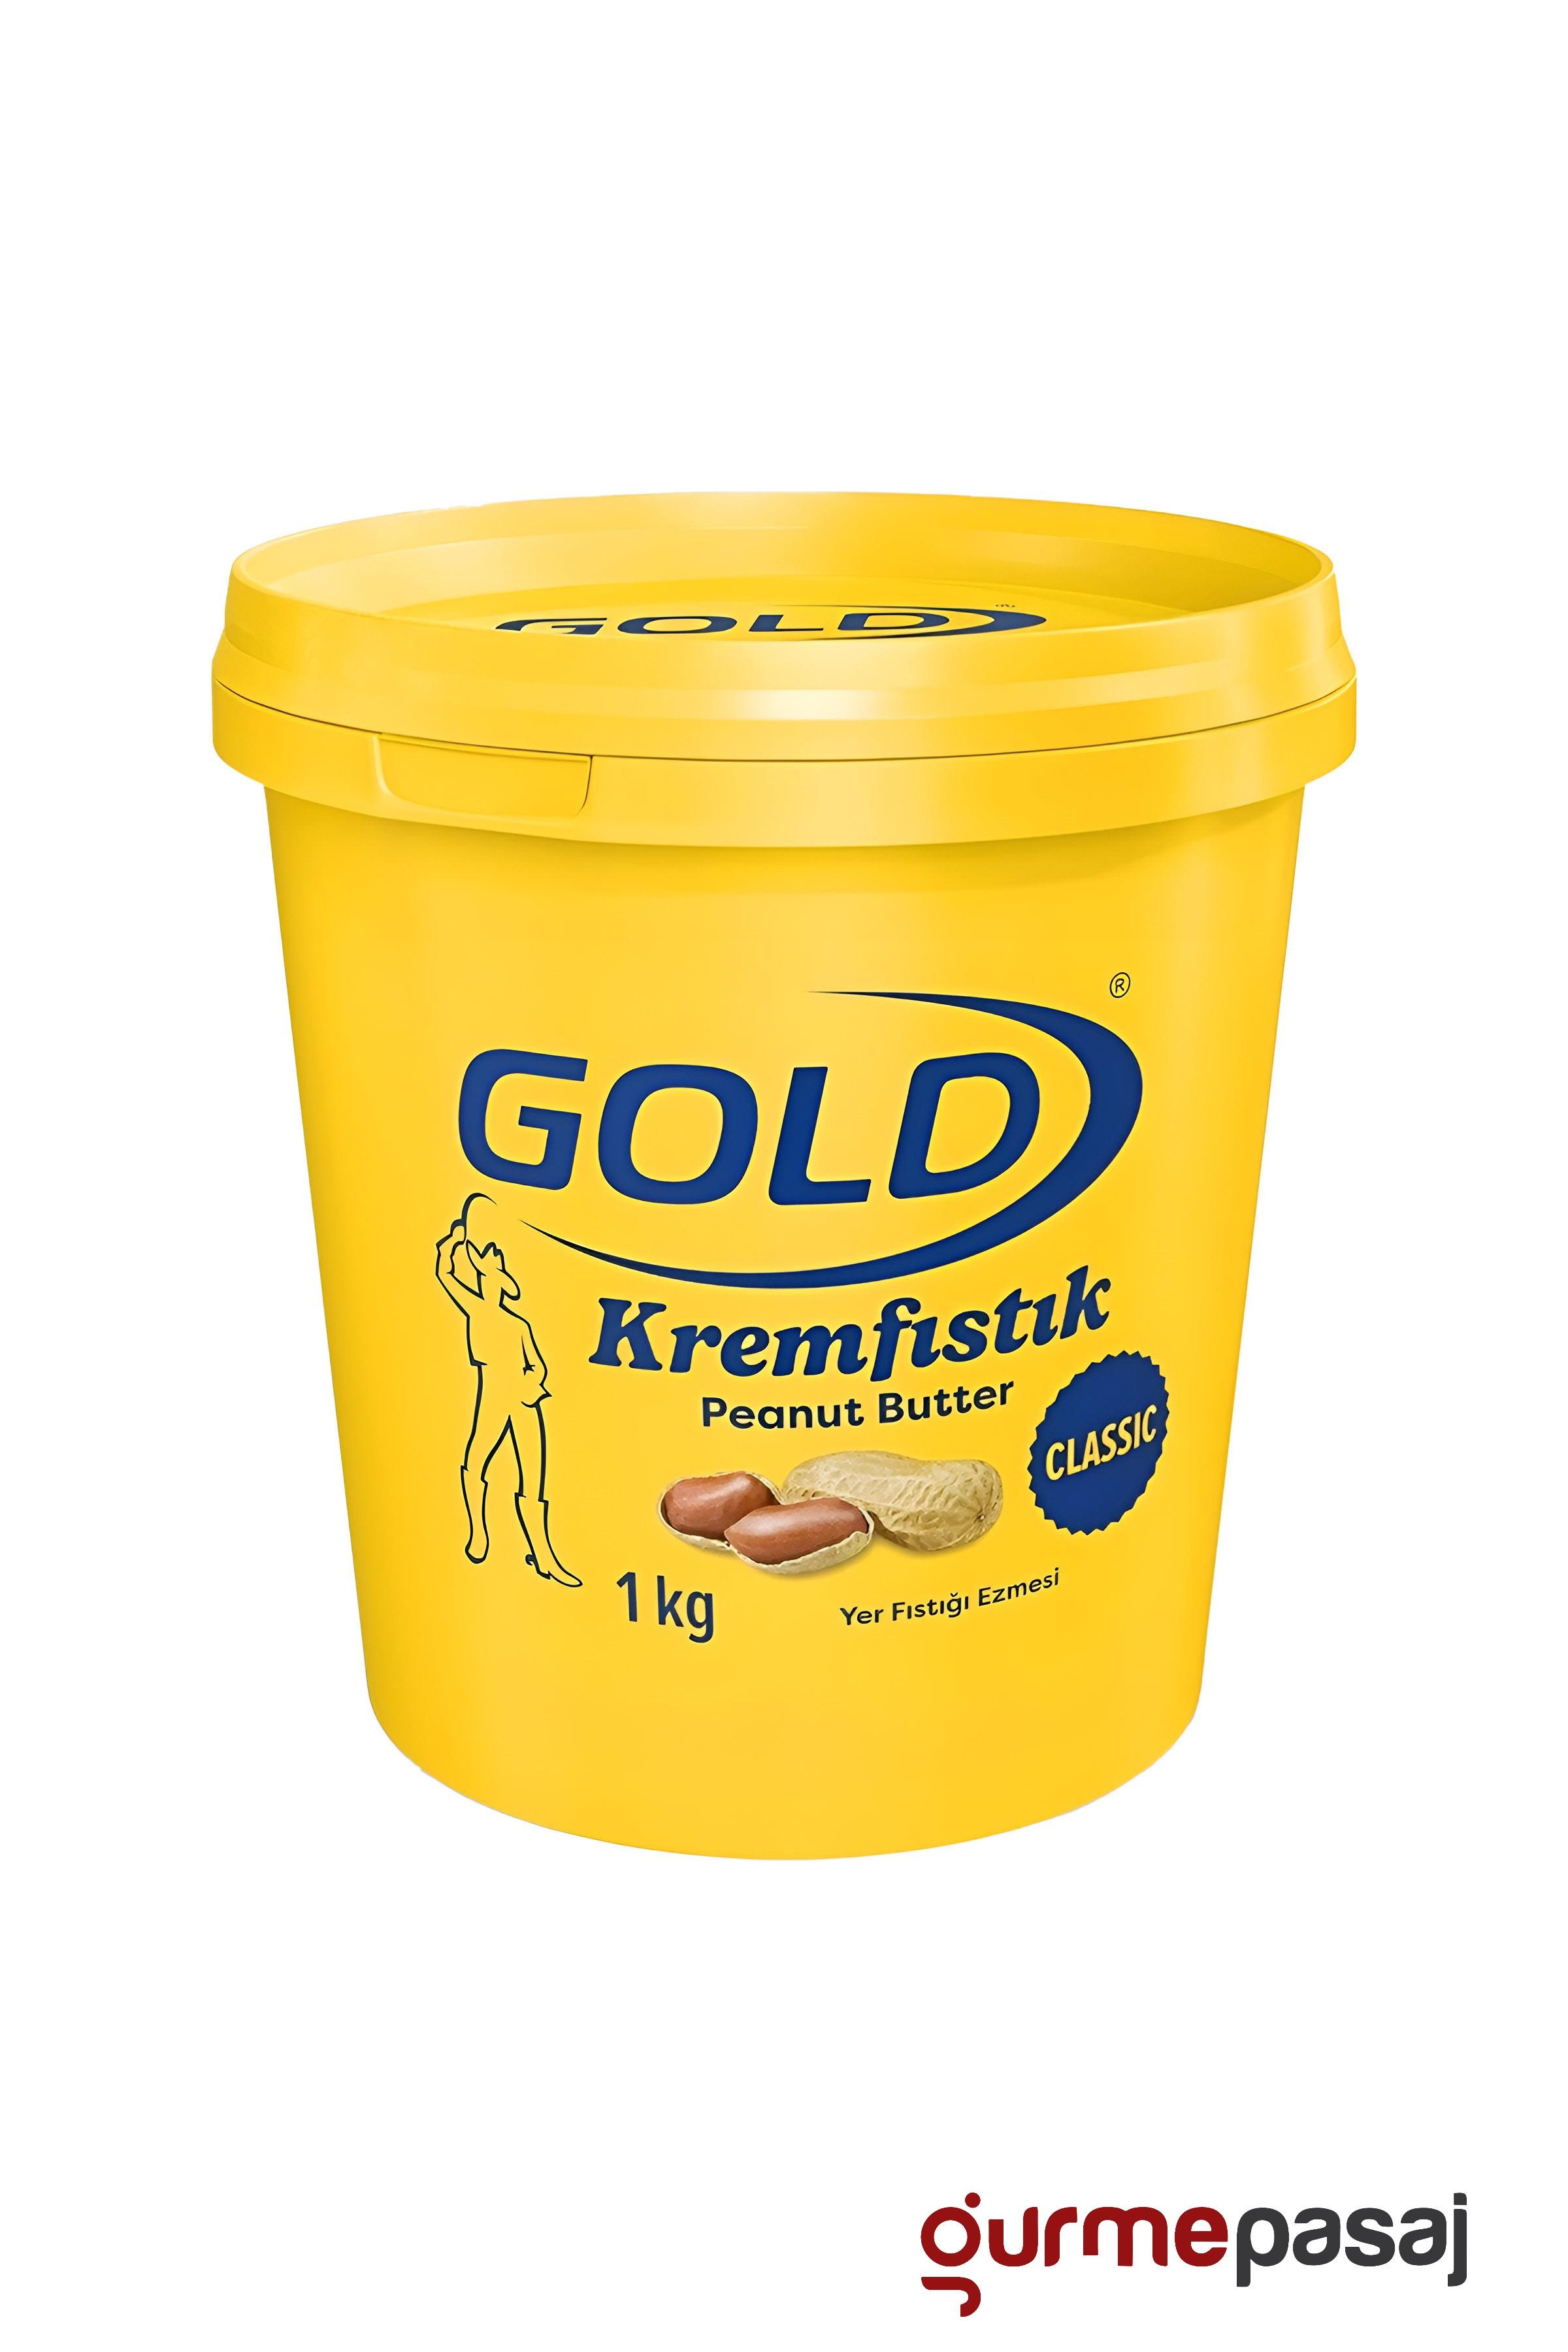 Polmak Gold Krem Fıstık Yer Fıstığı Ezmesi 1 KG